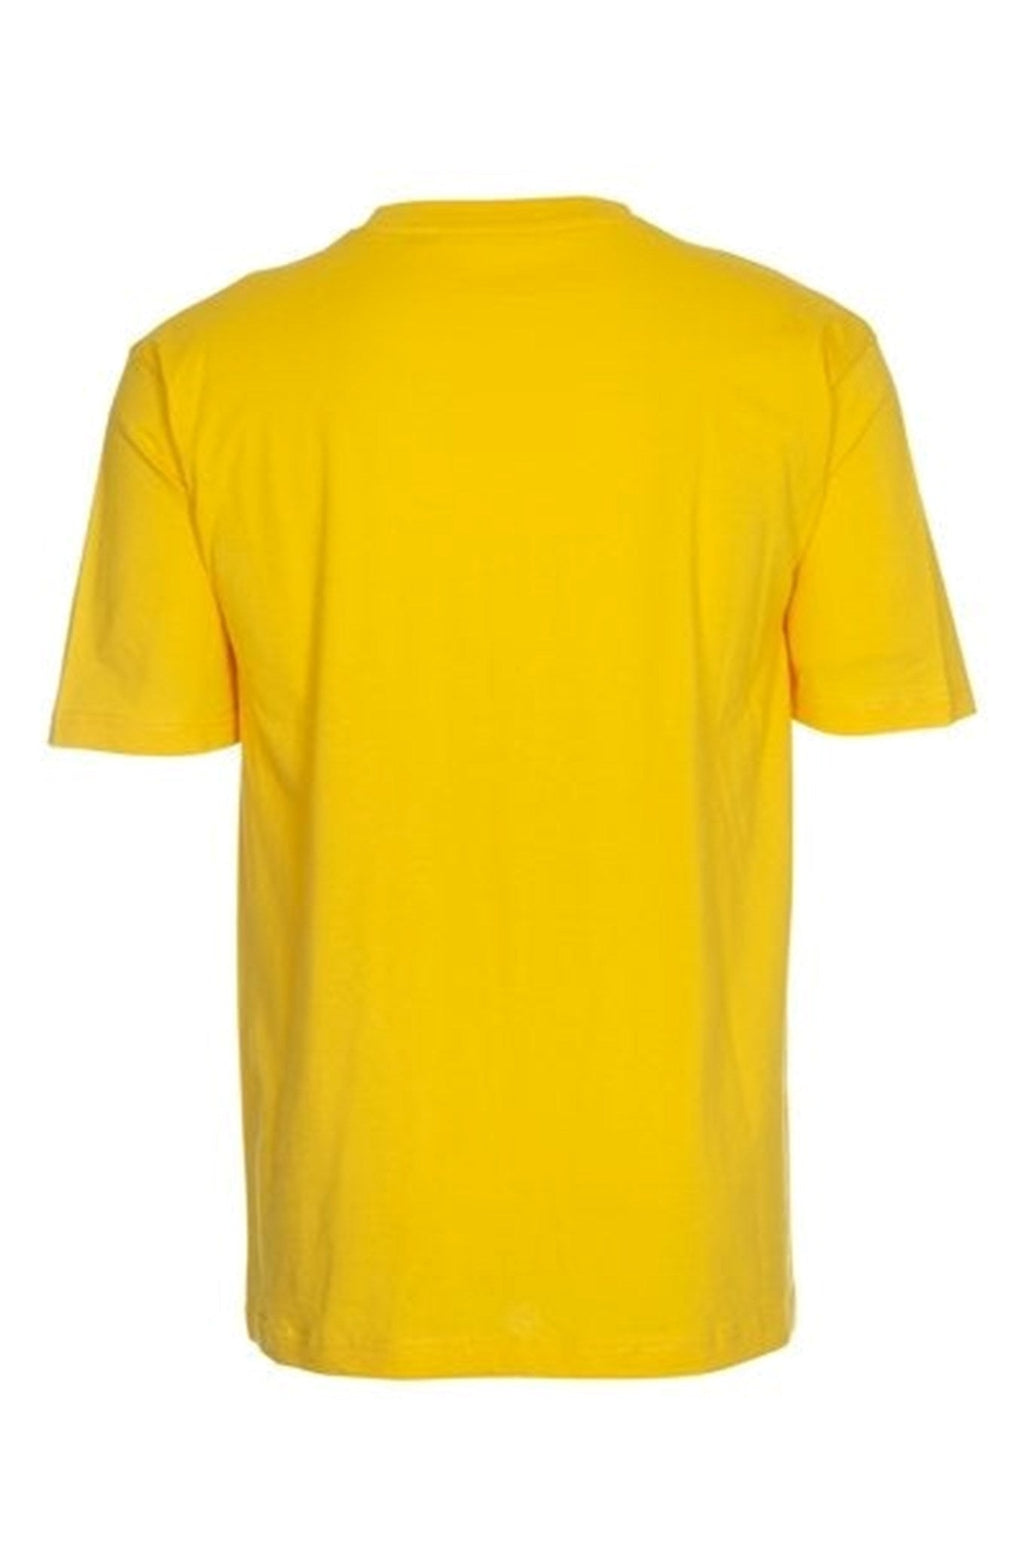 Dideli marškinėliai - geltoni